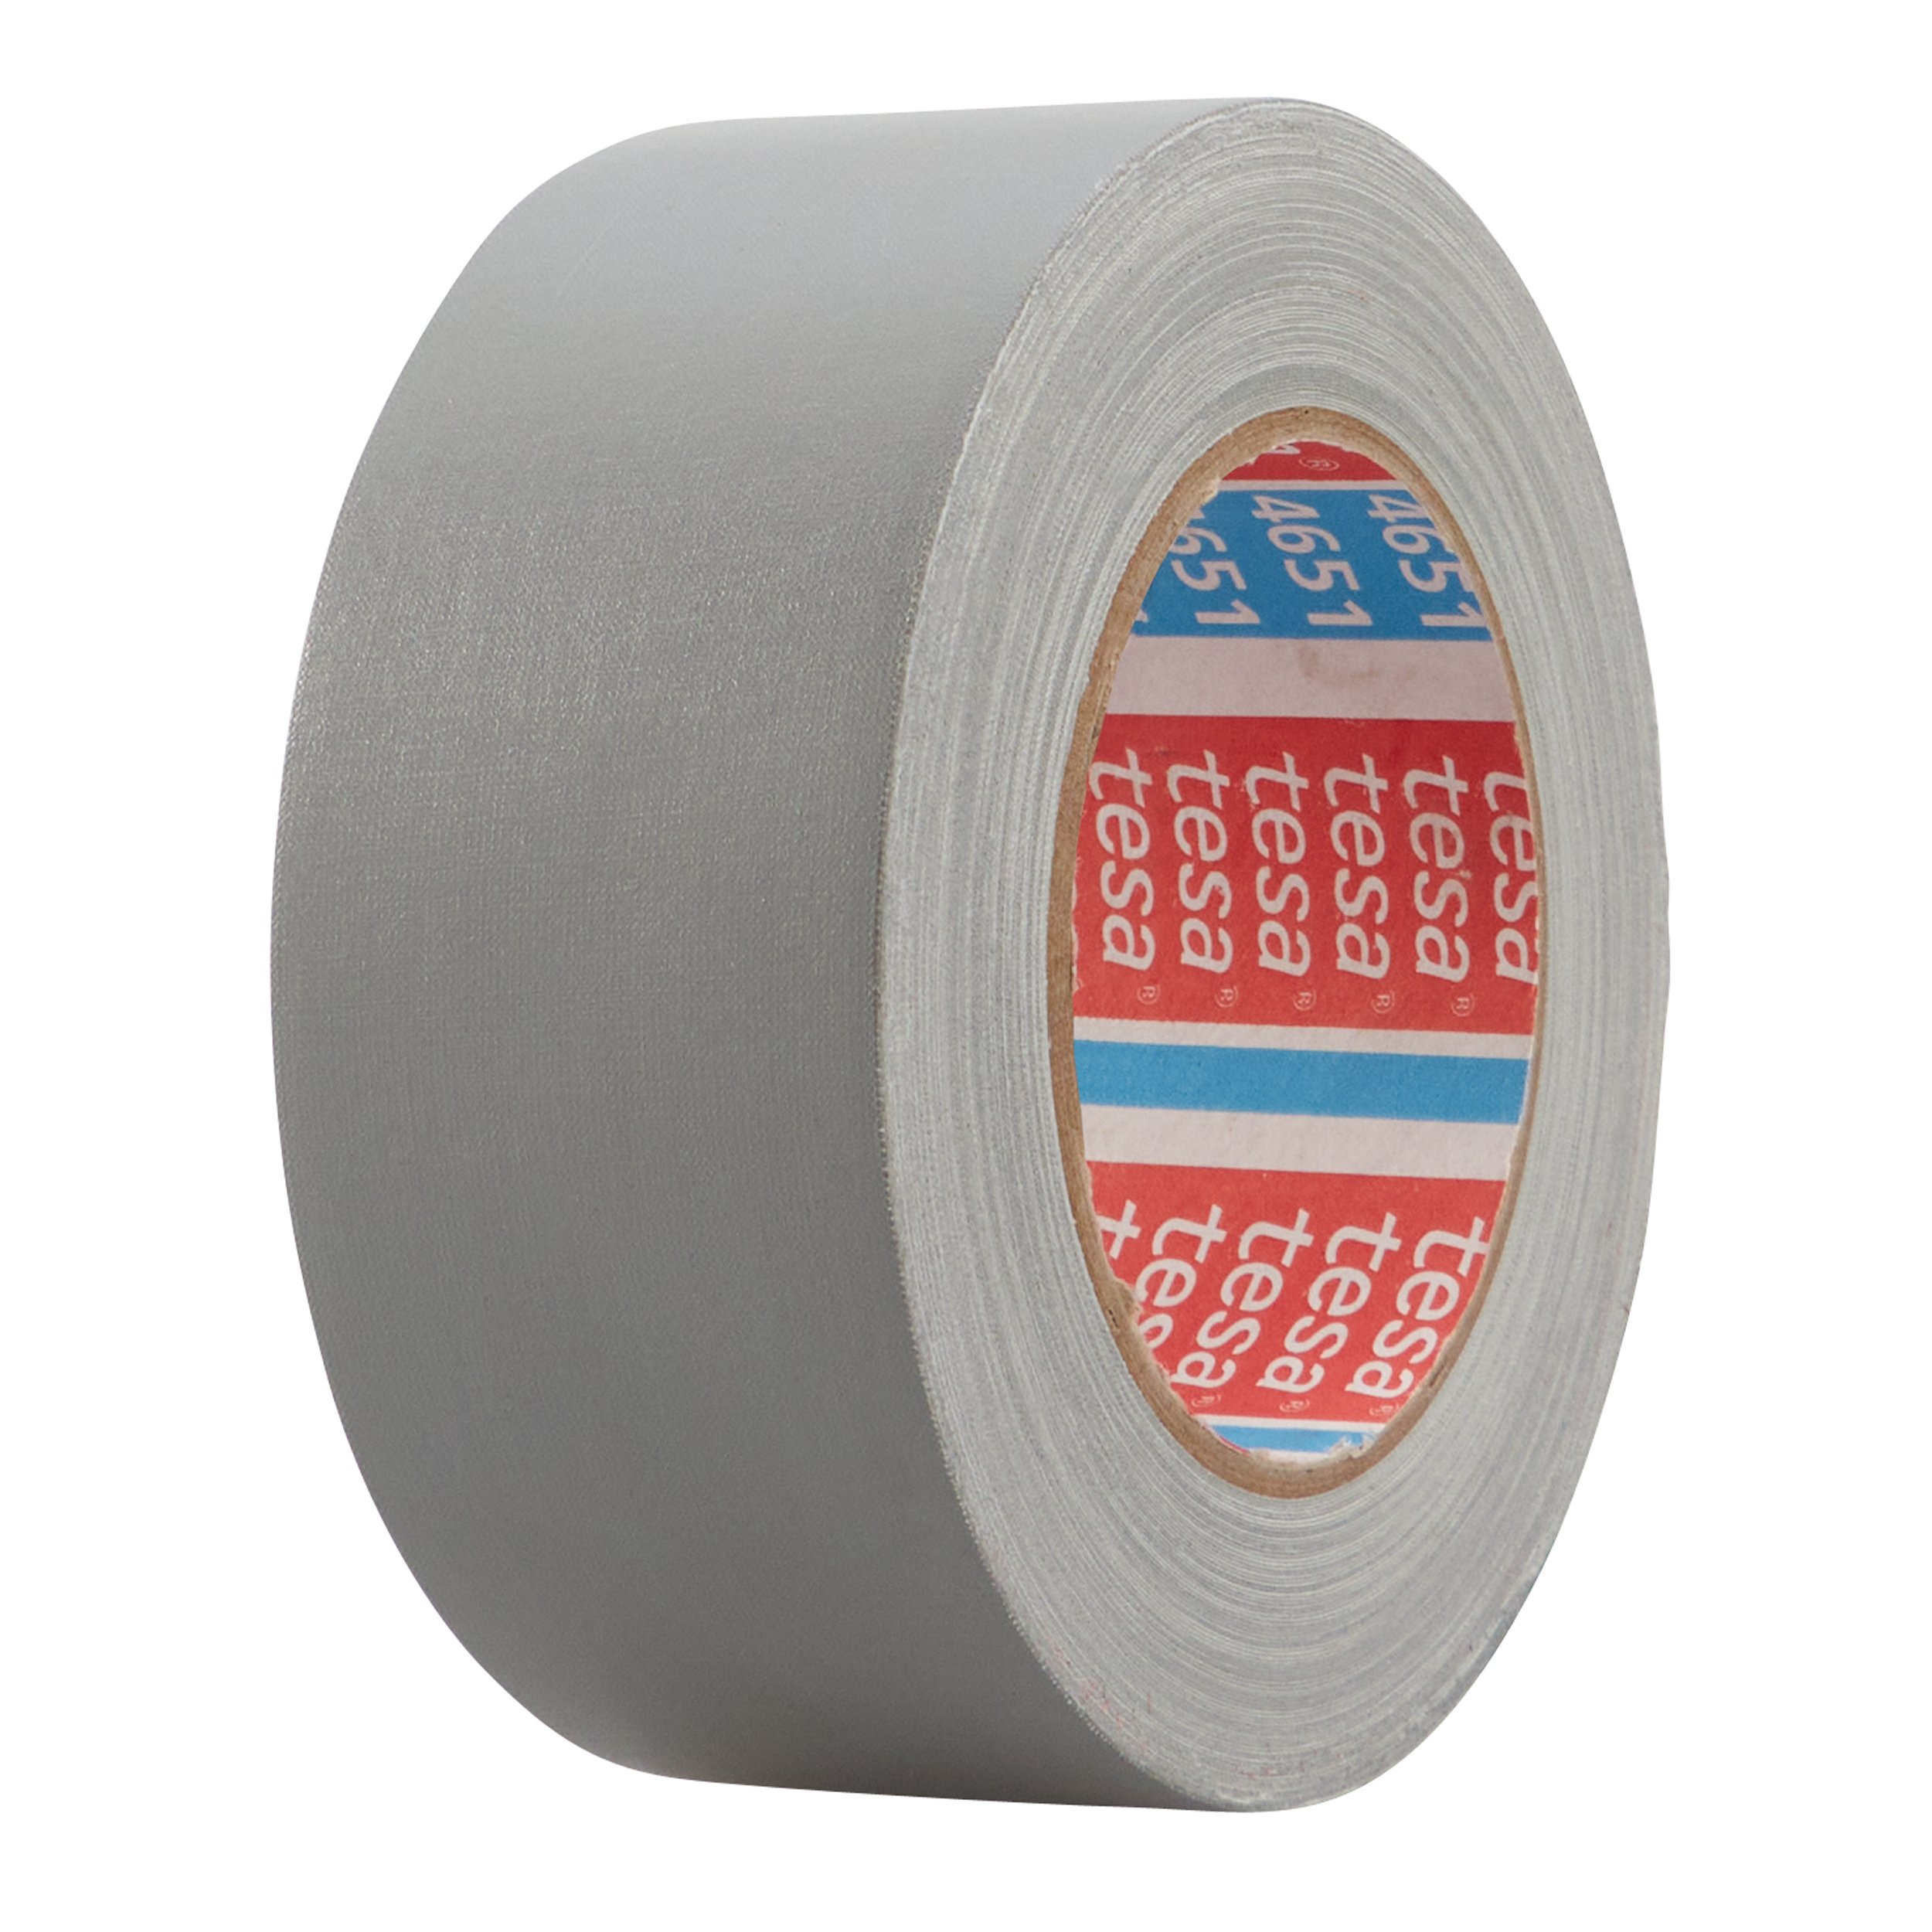 Tesa 4651 Duct Tape, 50m x 25mm, White, Acrylic Coated Finish